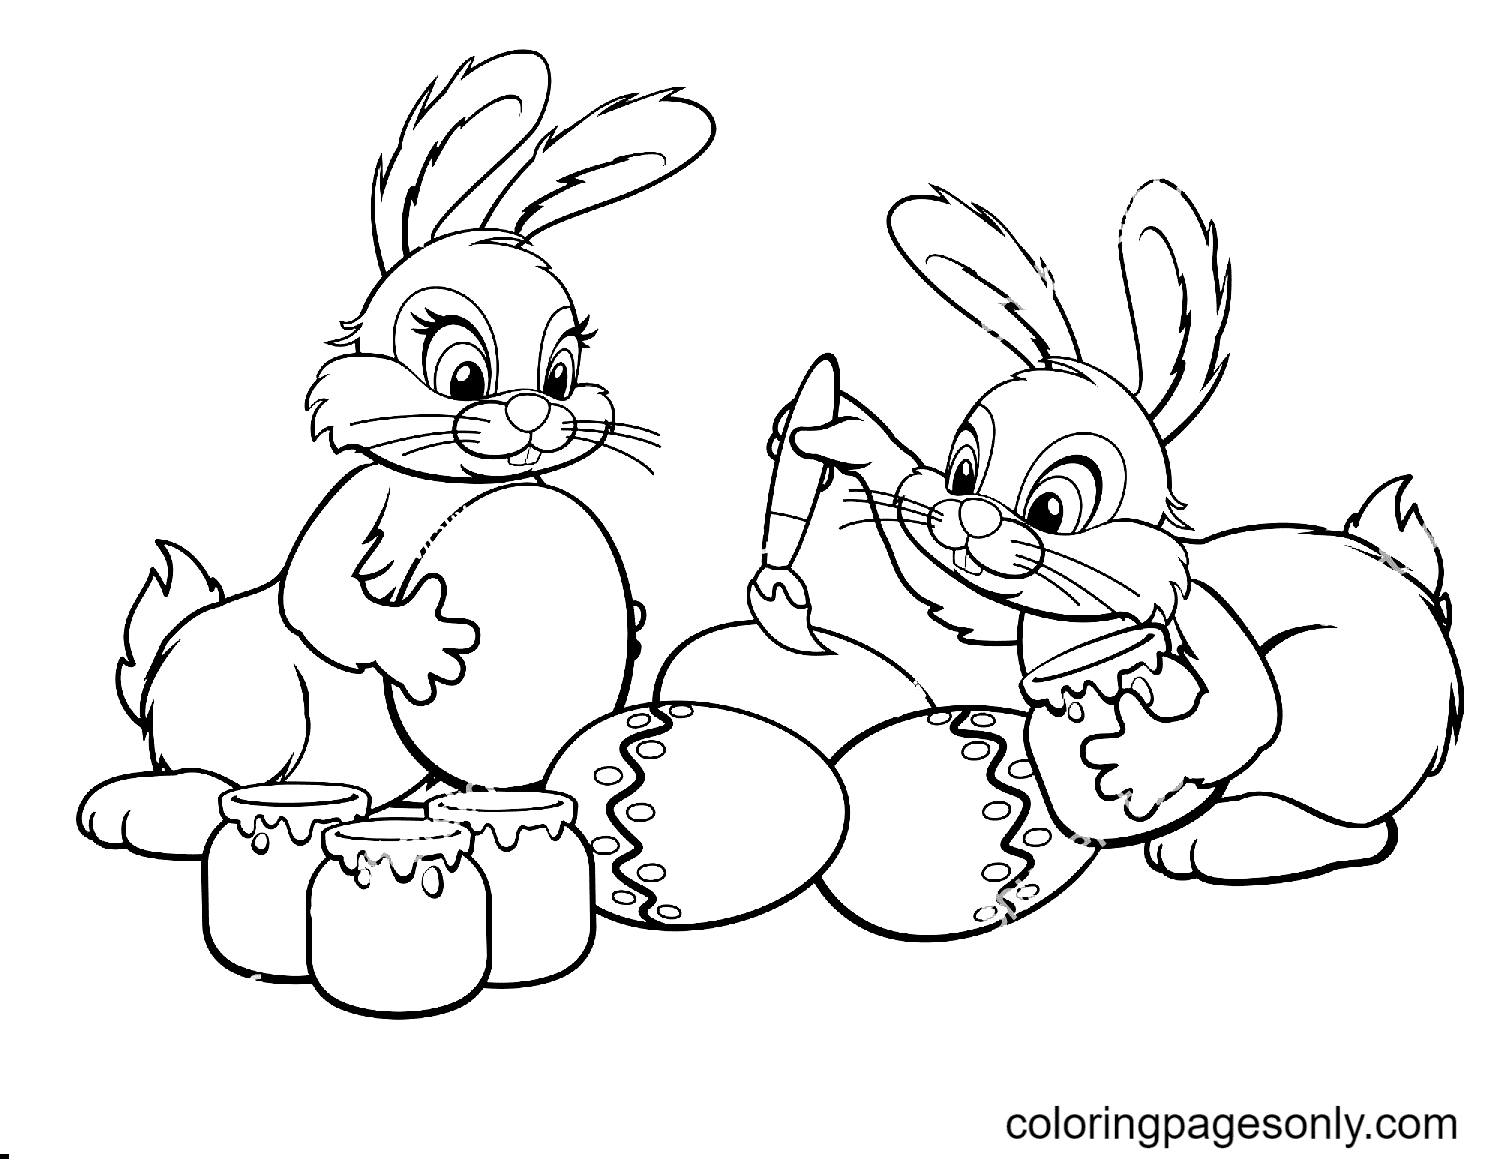 Dois coelhinhos da Páscoa desenham ovos do coelhinho da Páscoa